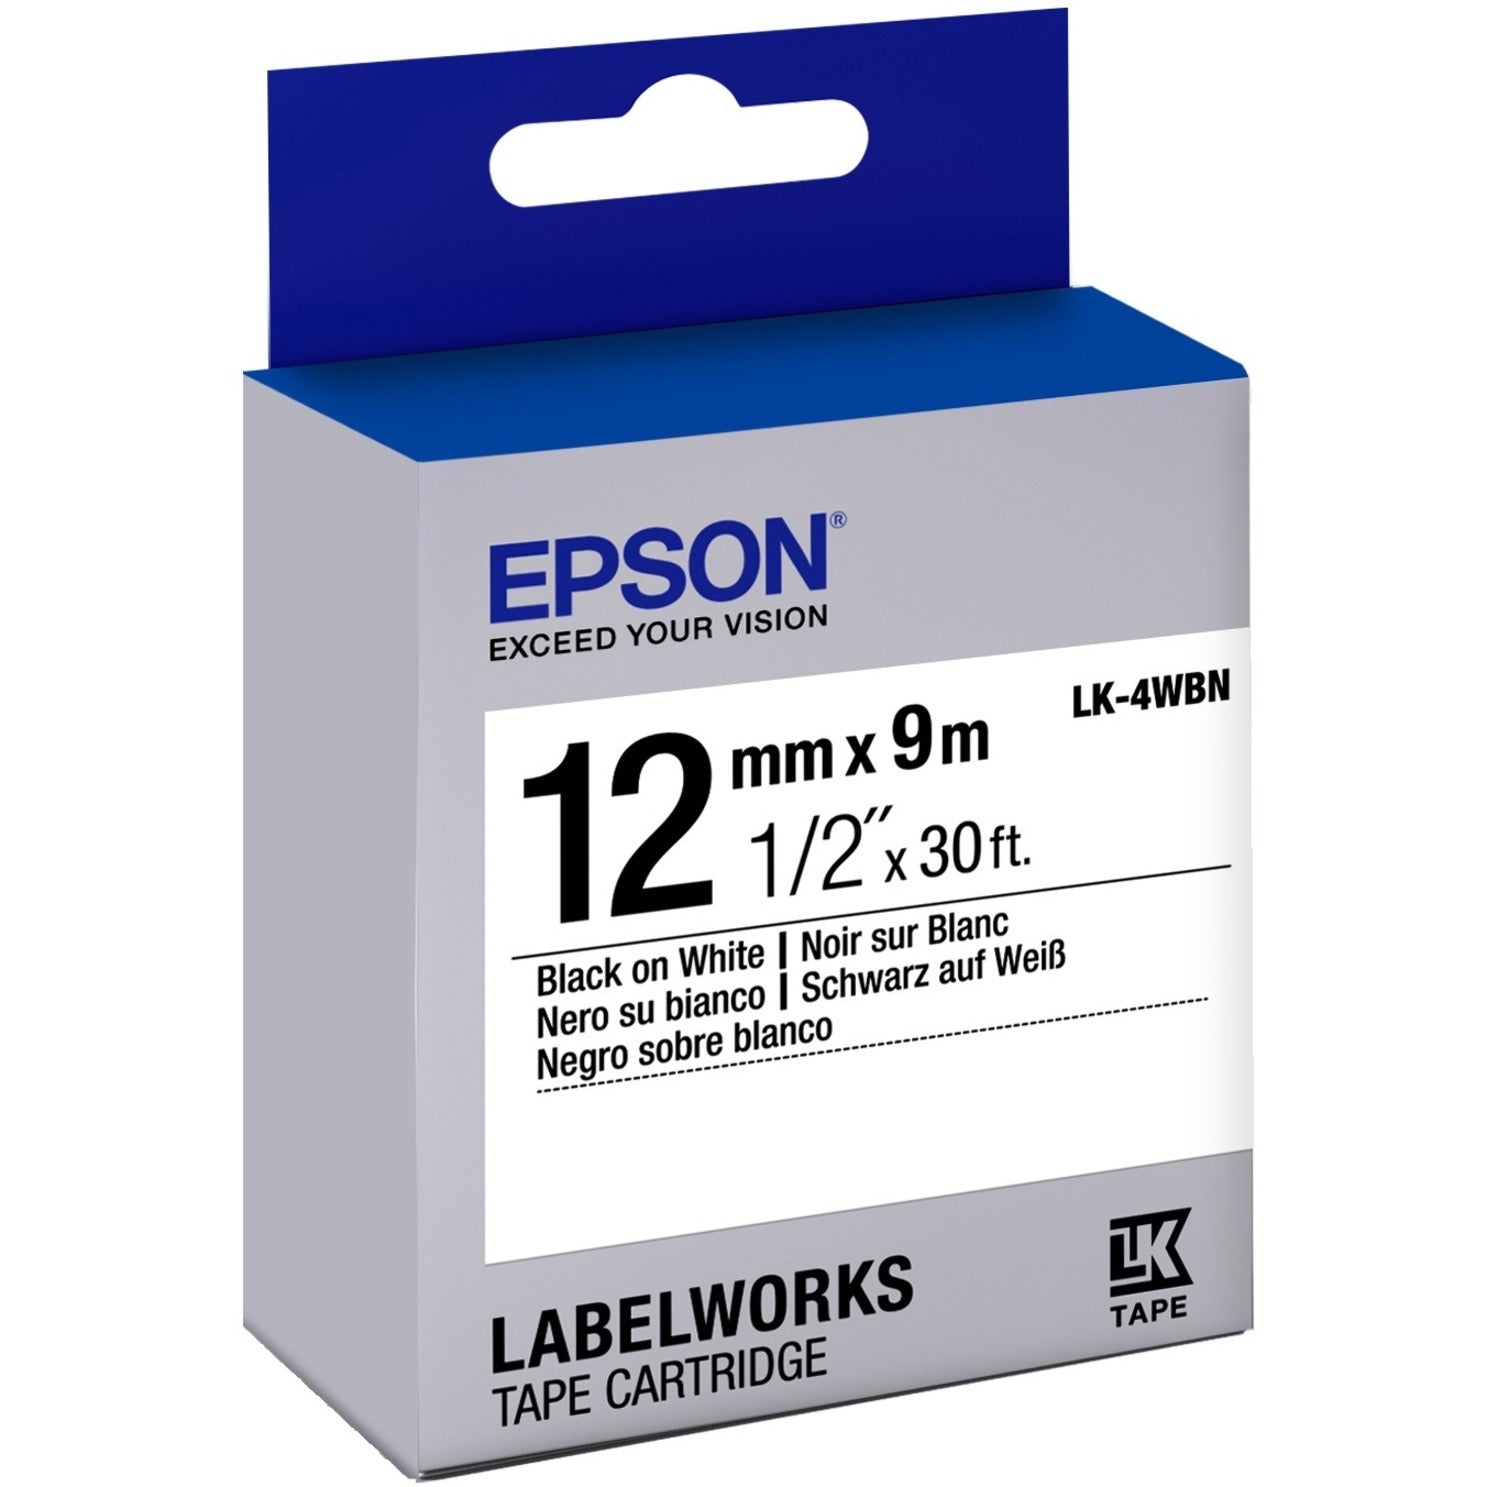 Epson LK-4WBN LabelWorks Standard Tape Cartridge ~1/2" Svart på Hvit Lett å Fjerne